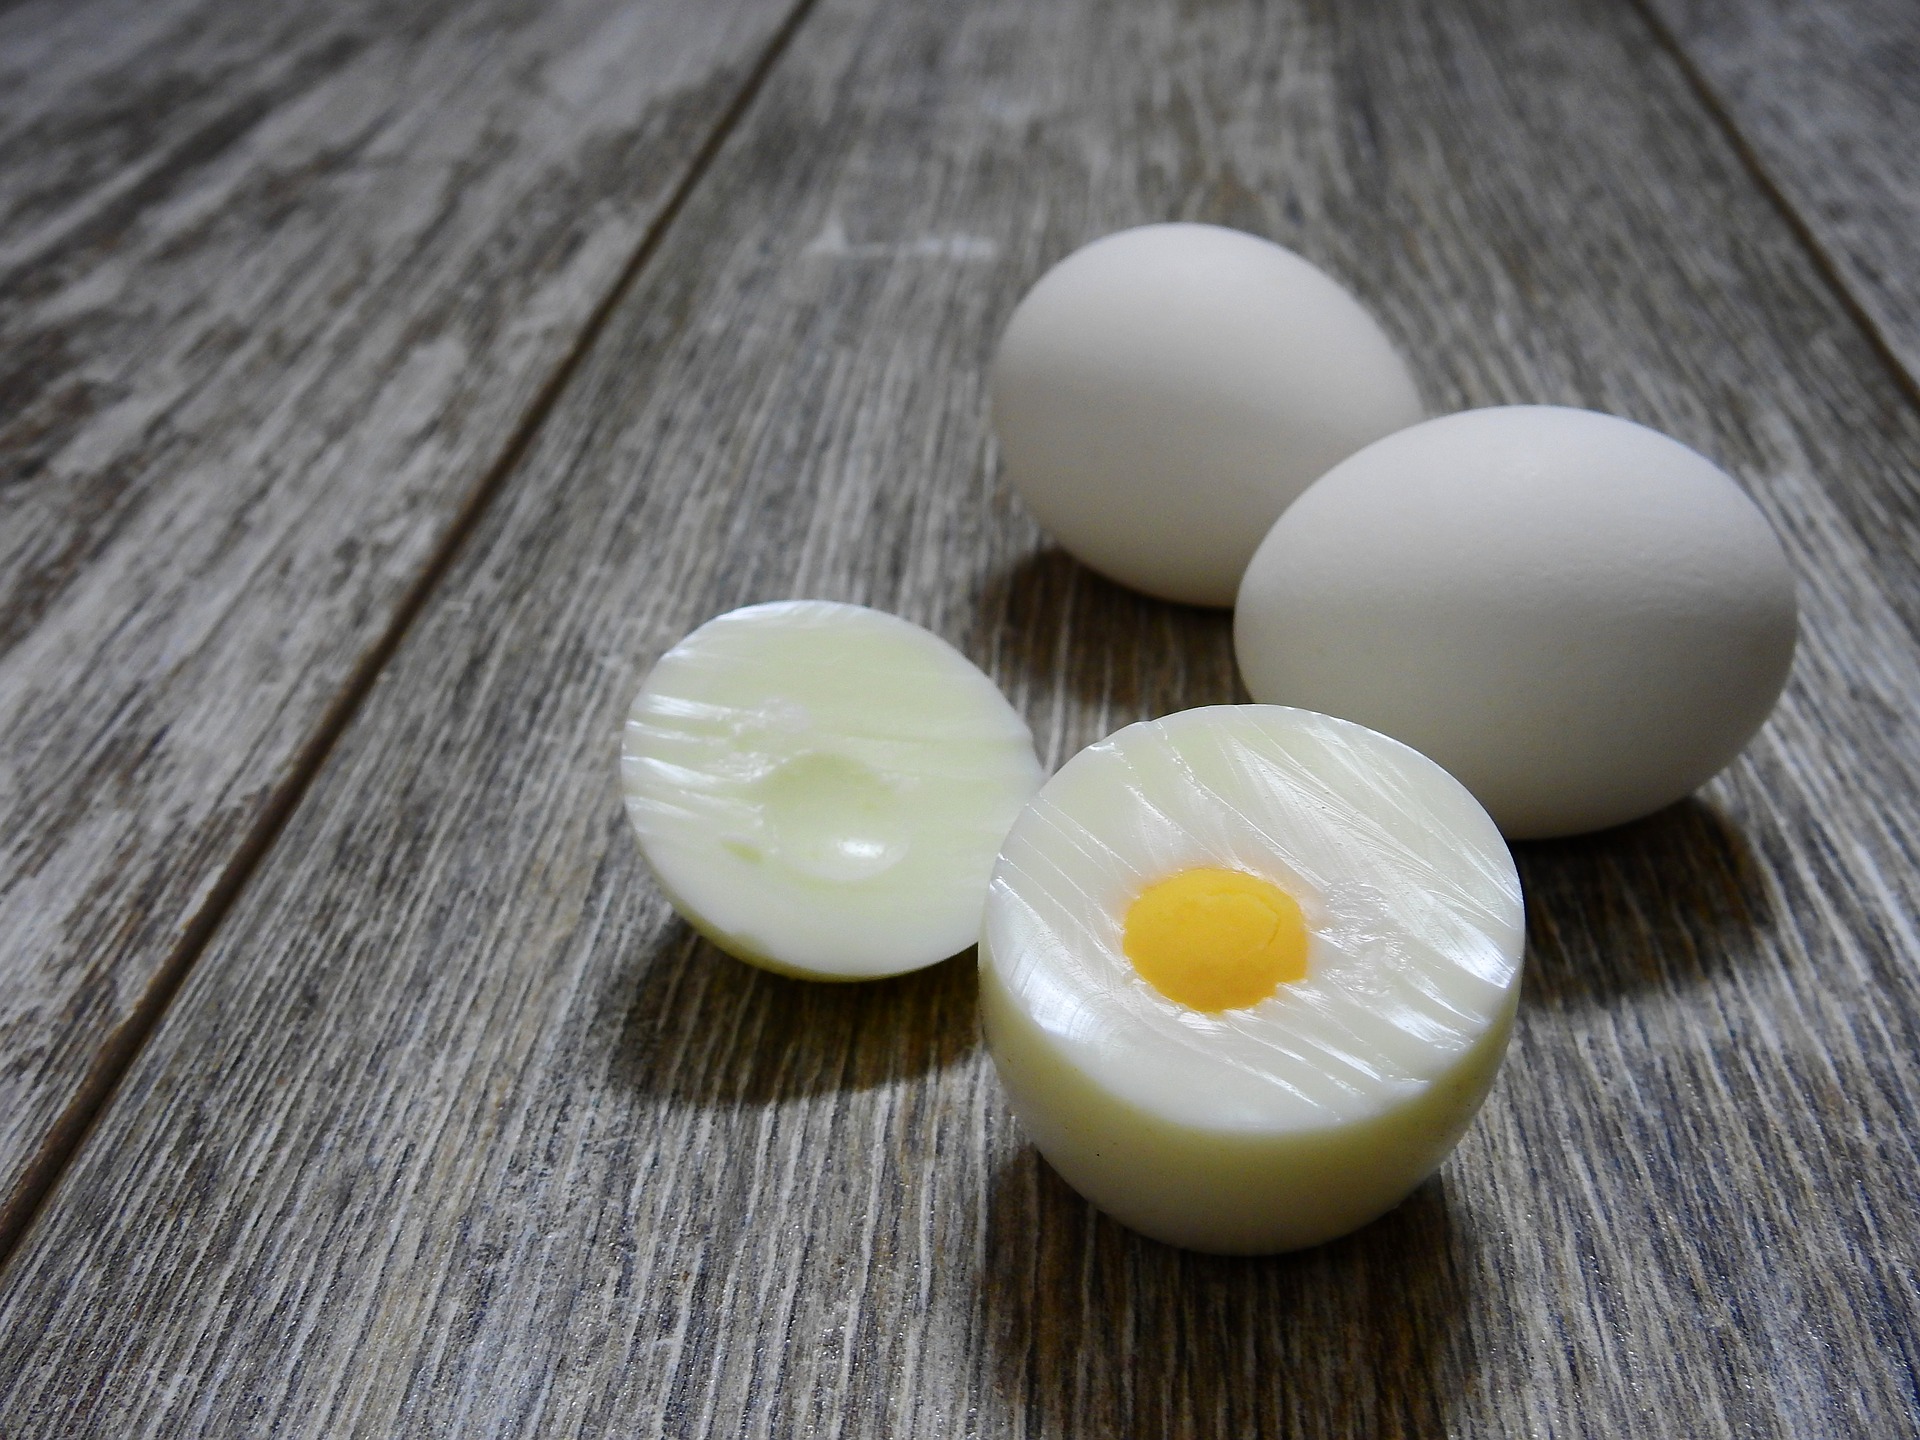 Saiba por que você deveria começar a colocar suco de limão nos ovos cozidos